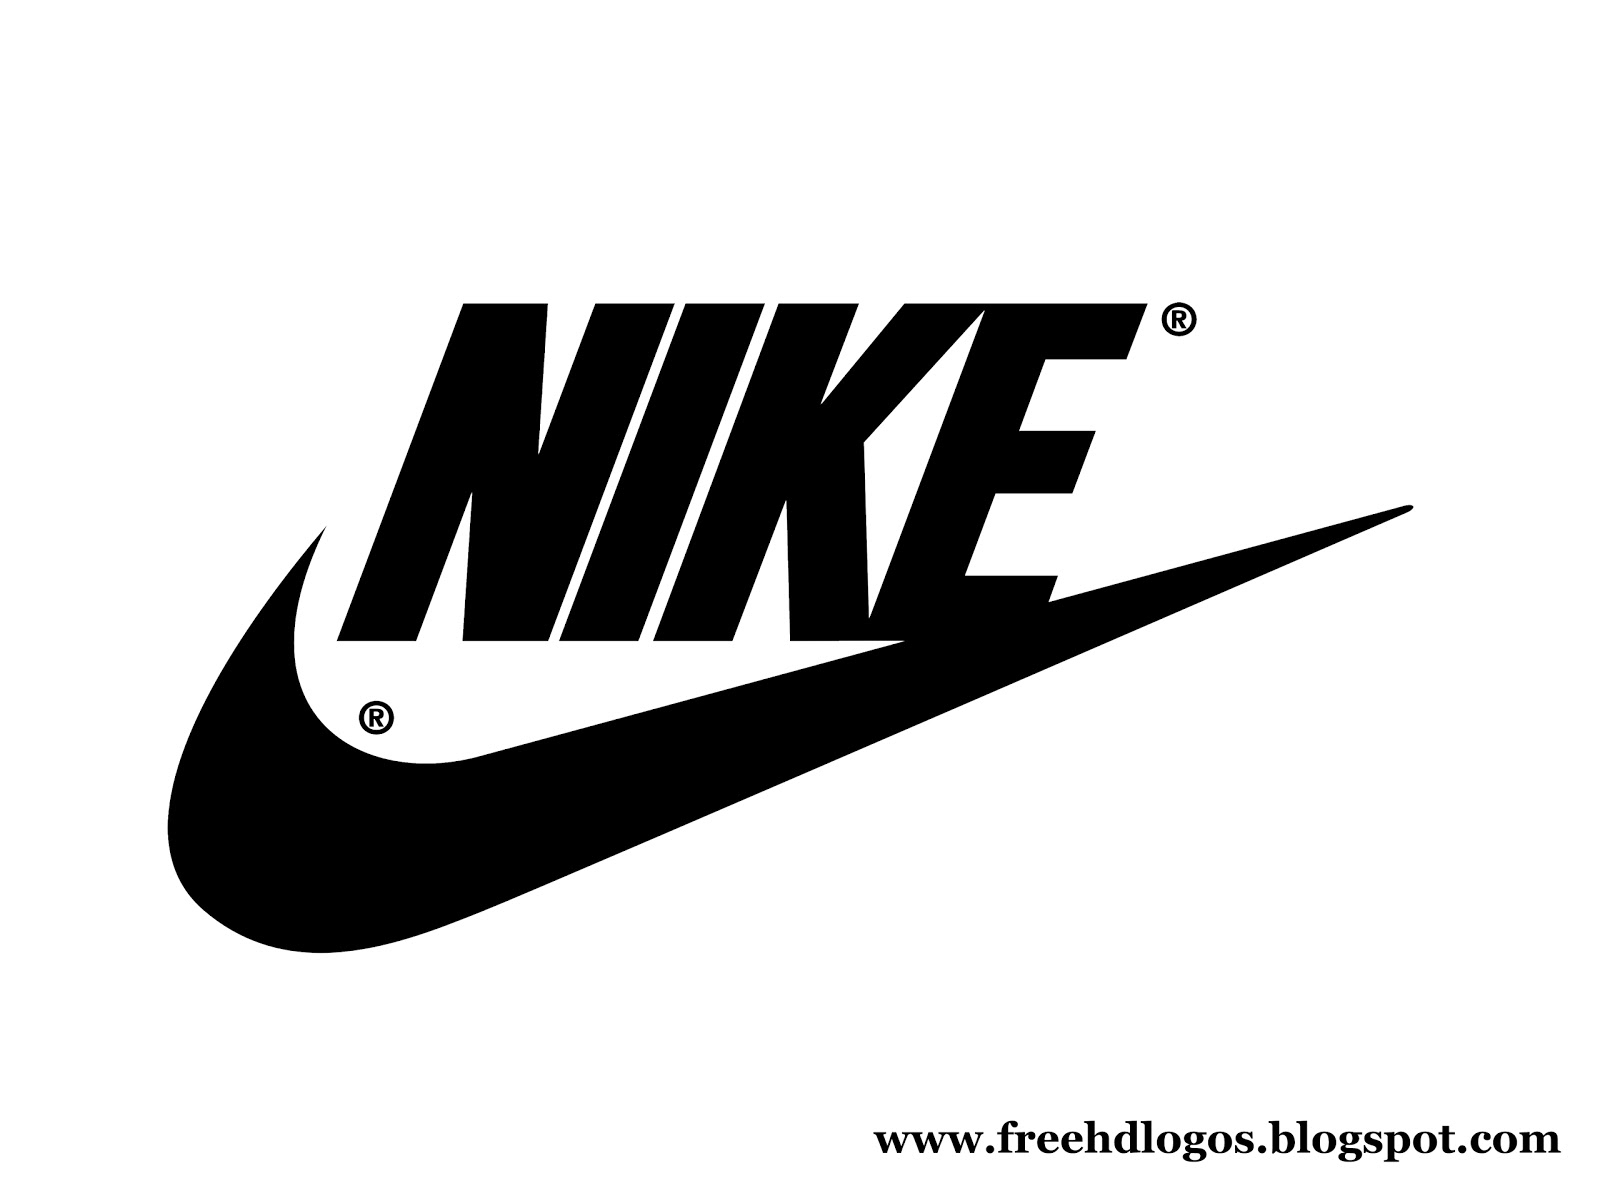 Free HD Logos and Images: Nike Logos HD Large Size - 1600 x 1198 jpeg 71kB